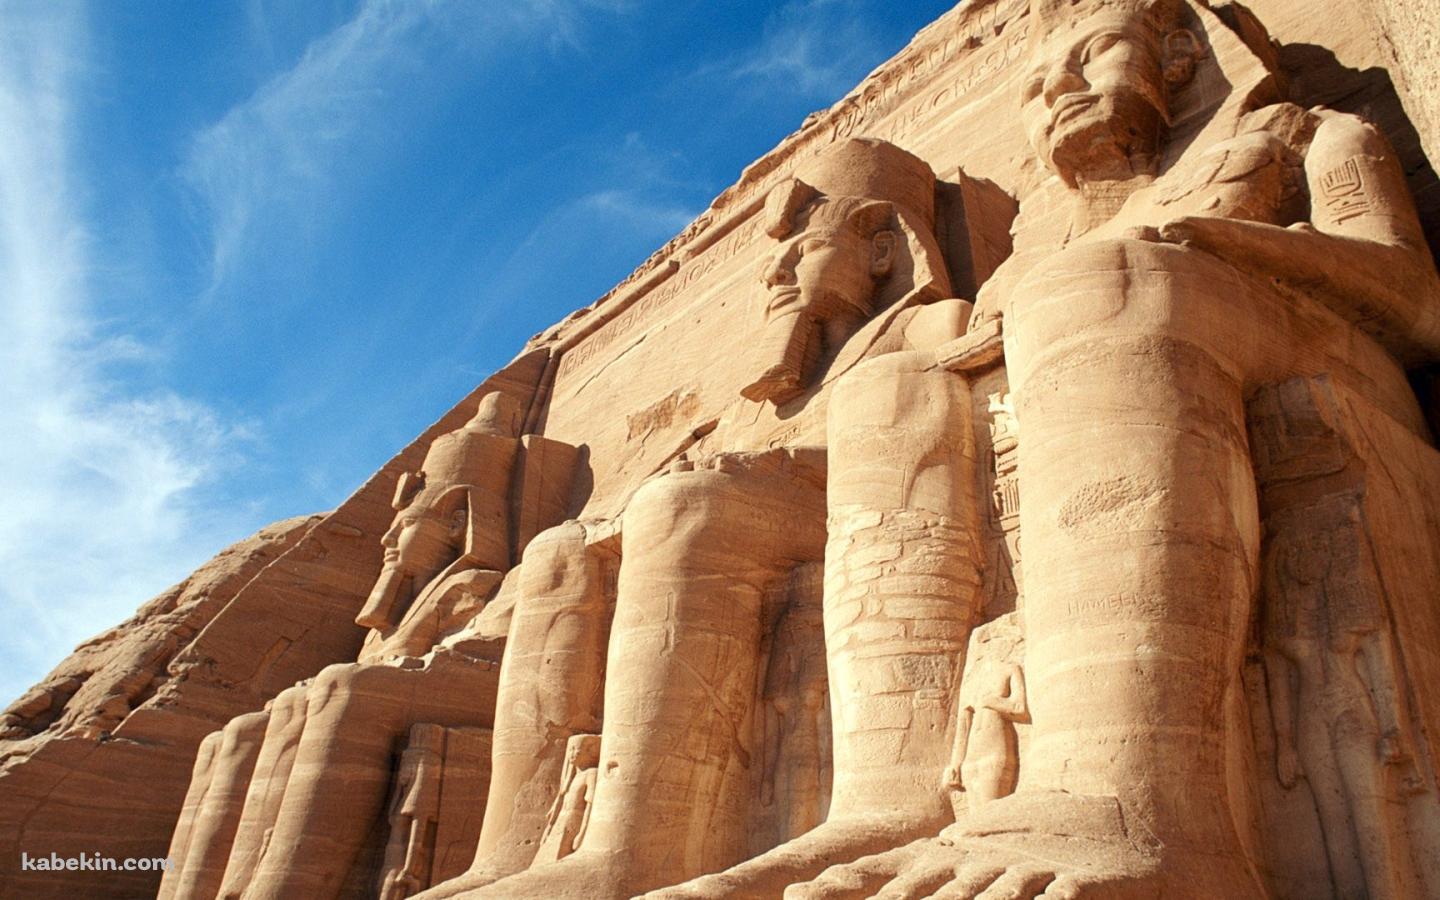 エジプトの寺院の壁紙(1440px x 900px) 高画質 PC・デスクトップ用